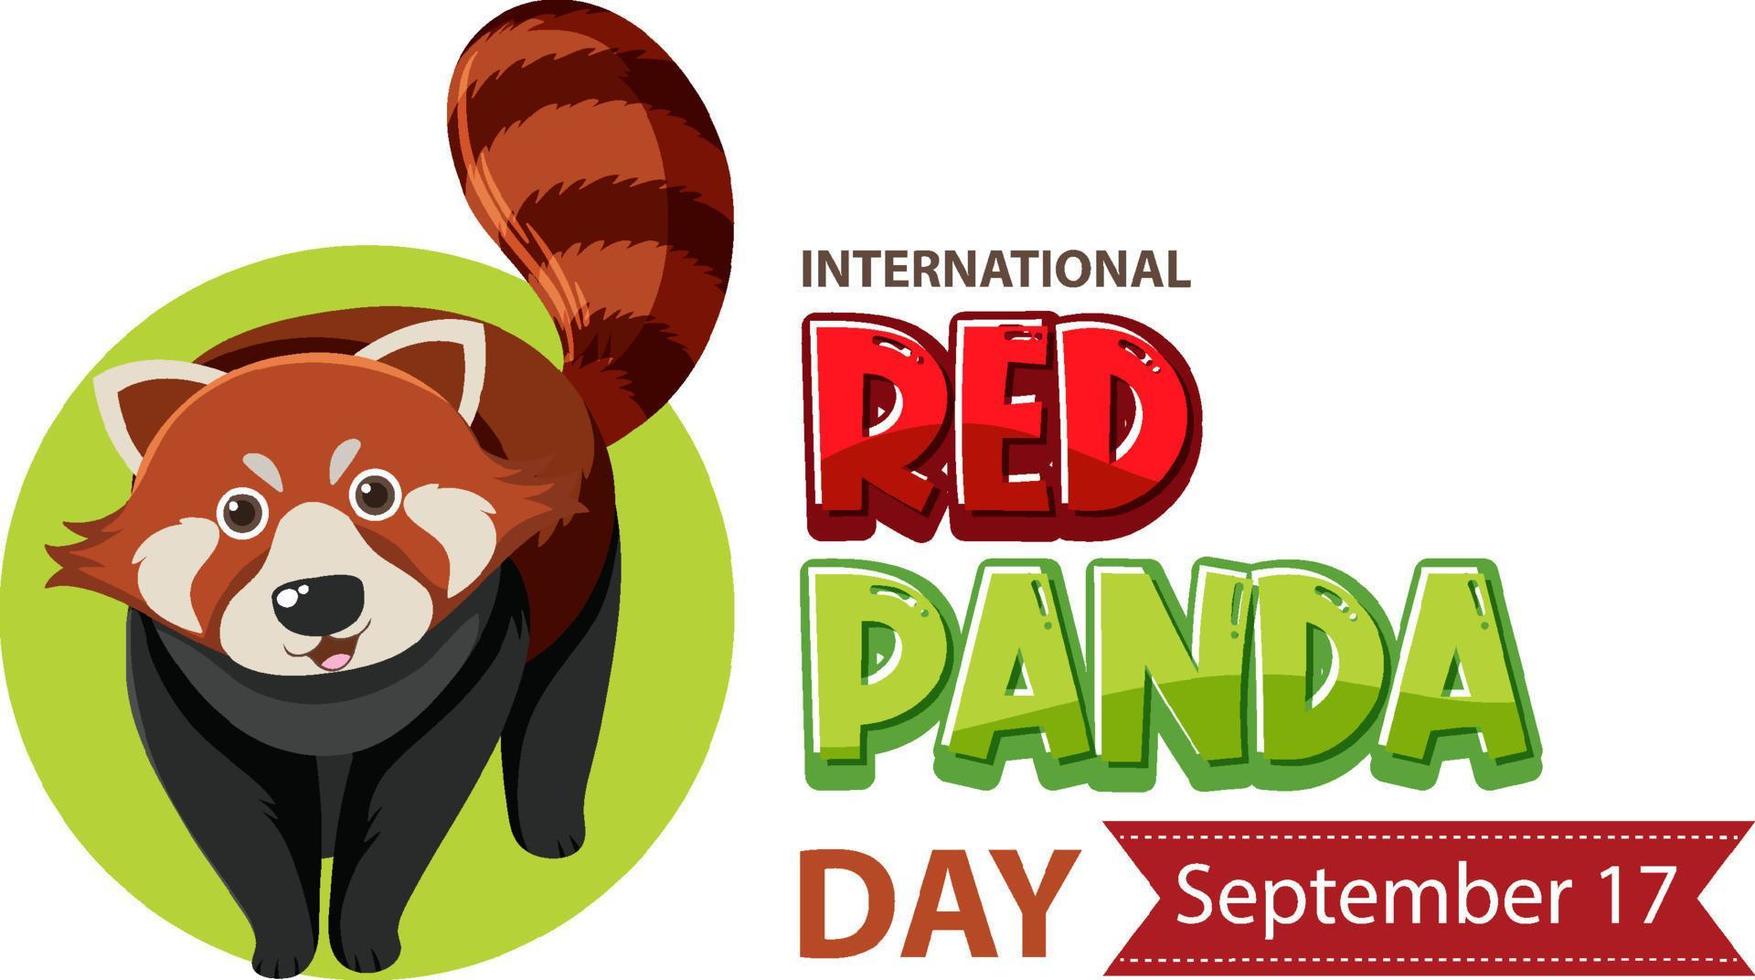 internationella röda pandadagen den 17 september vektor